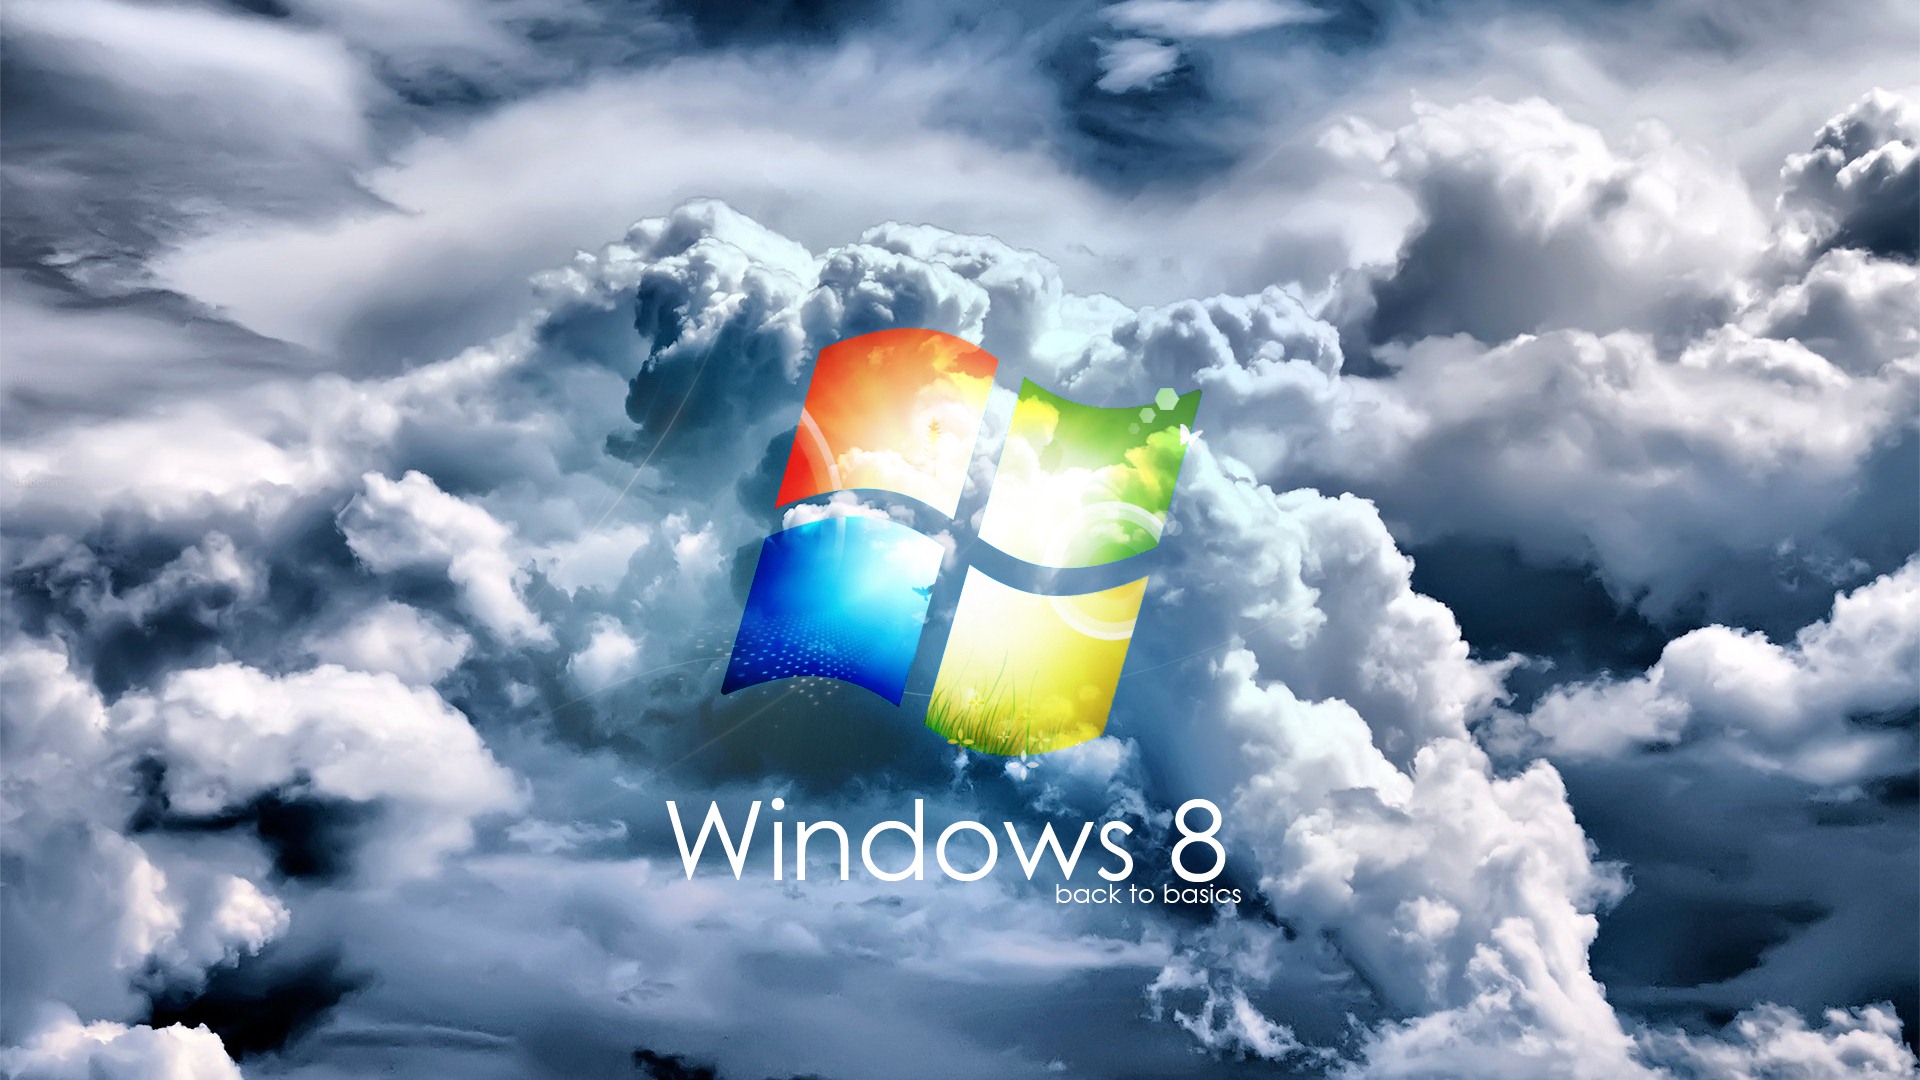 Windows 8 Theme Wallpaper (2) #17 - 1920x1080